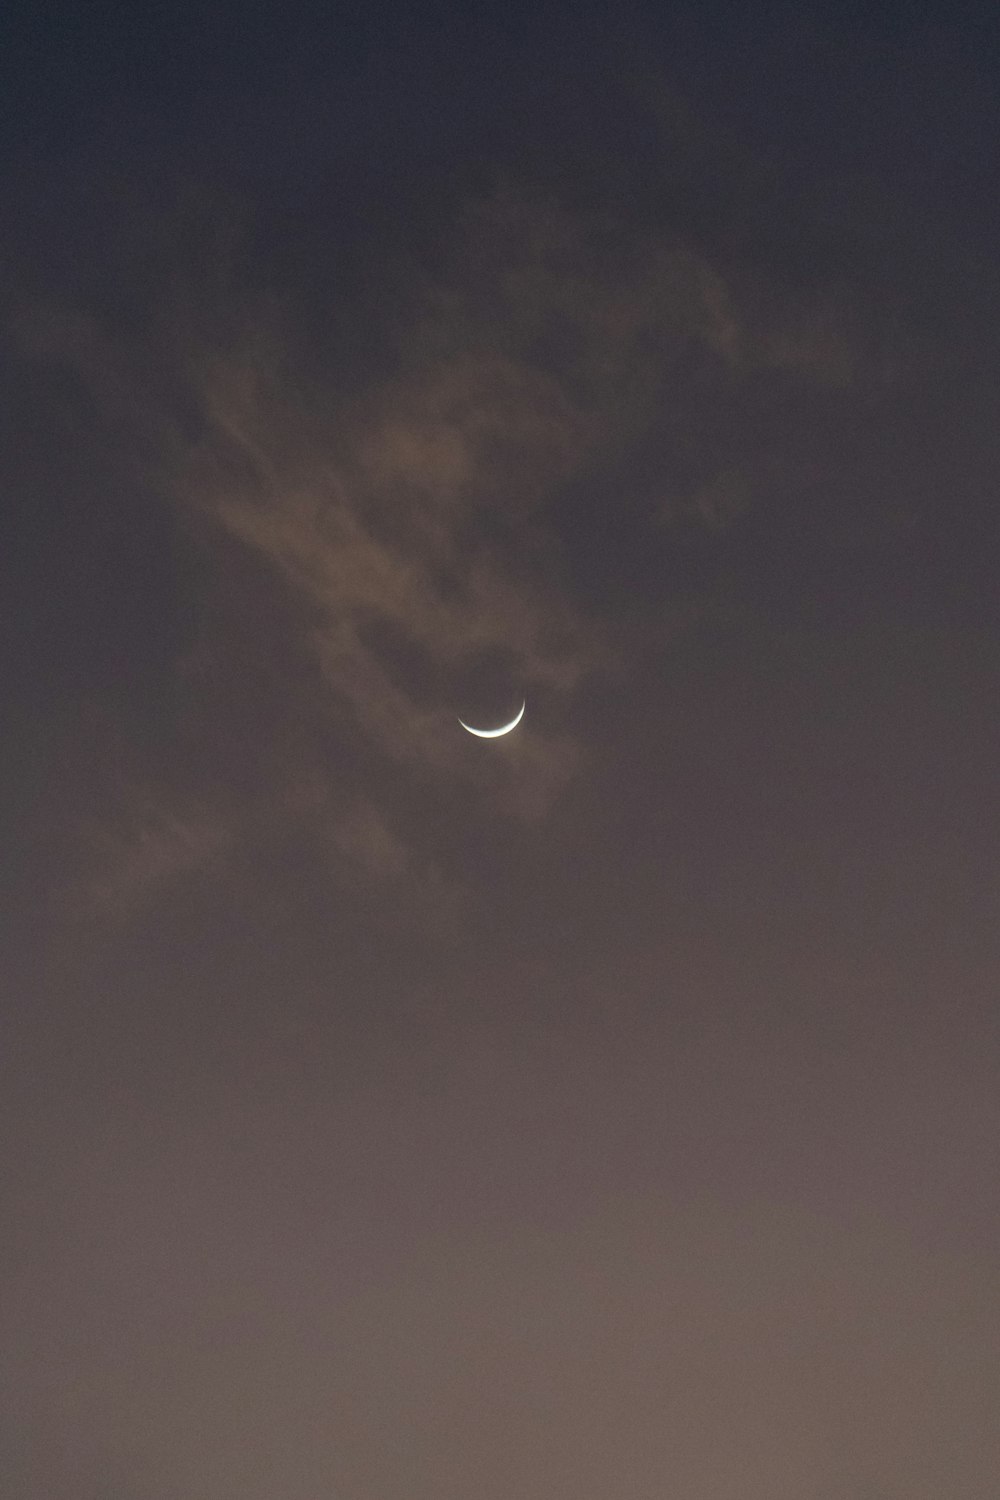 Una falce di luna è vista nel cielo notturno